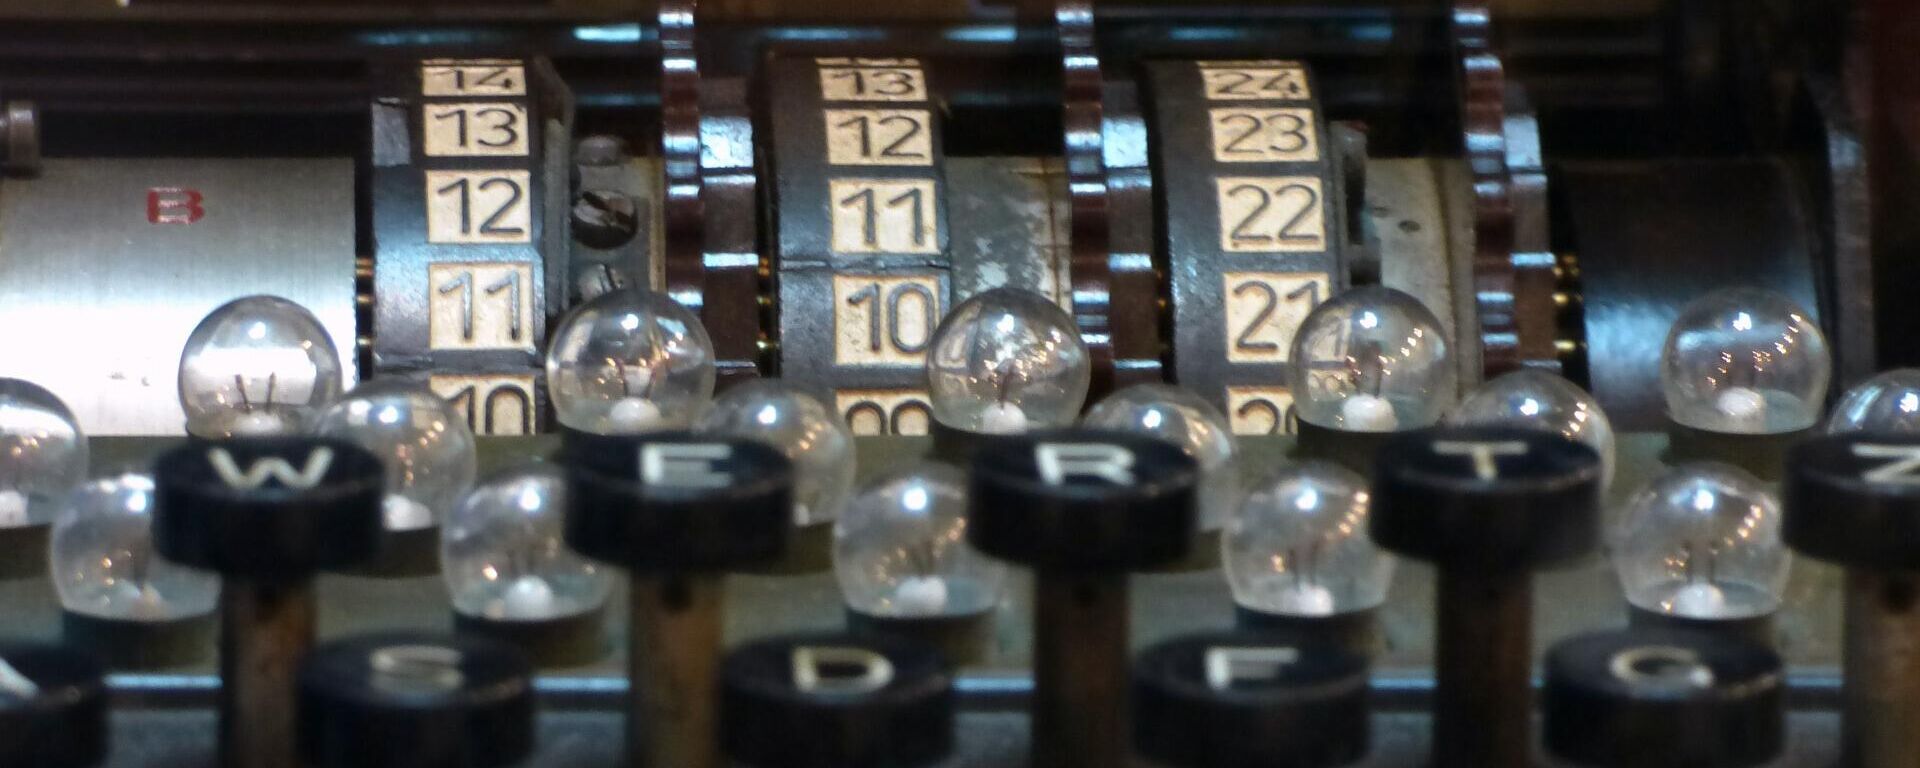 Máquina Enigma - Sputnik Mundo, 1920, 25.06.2021